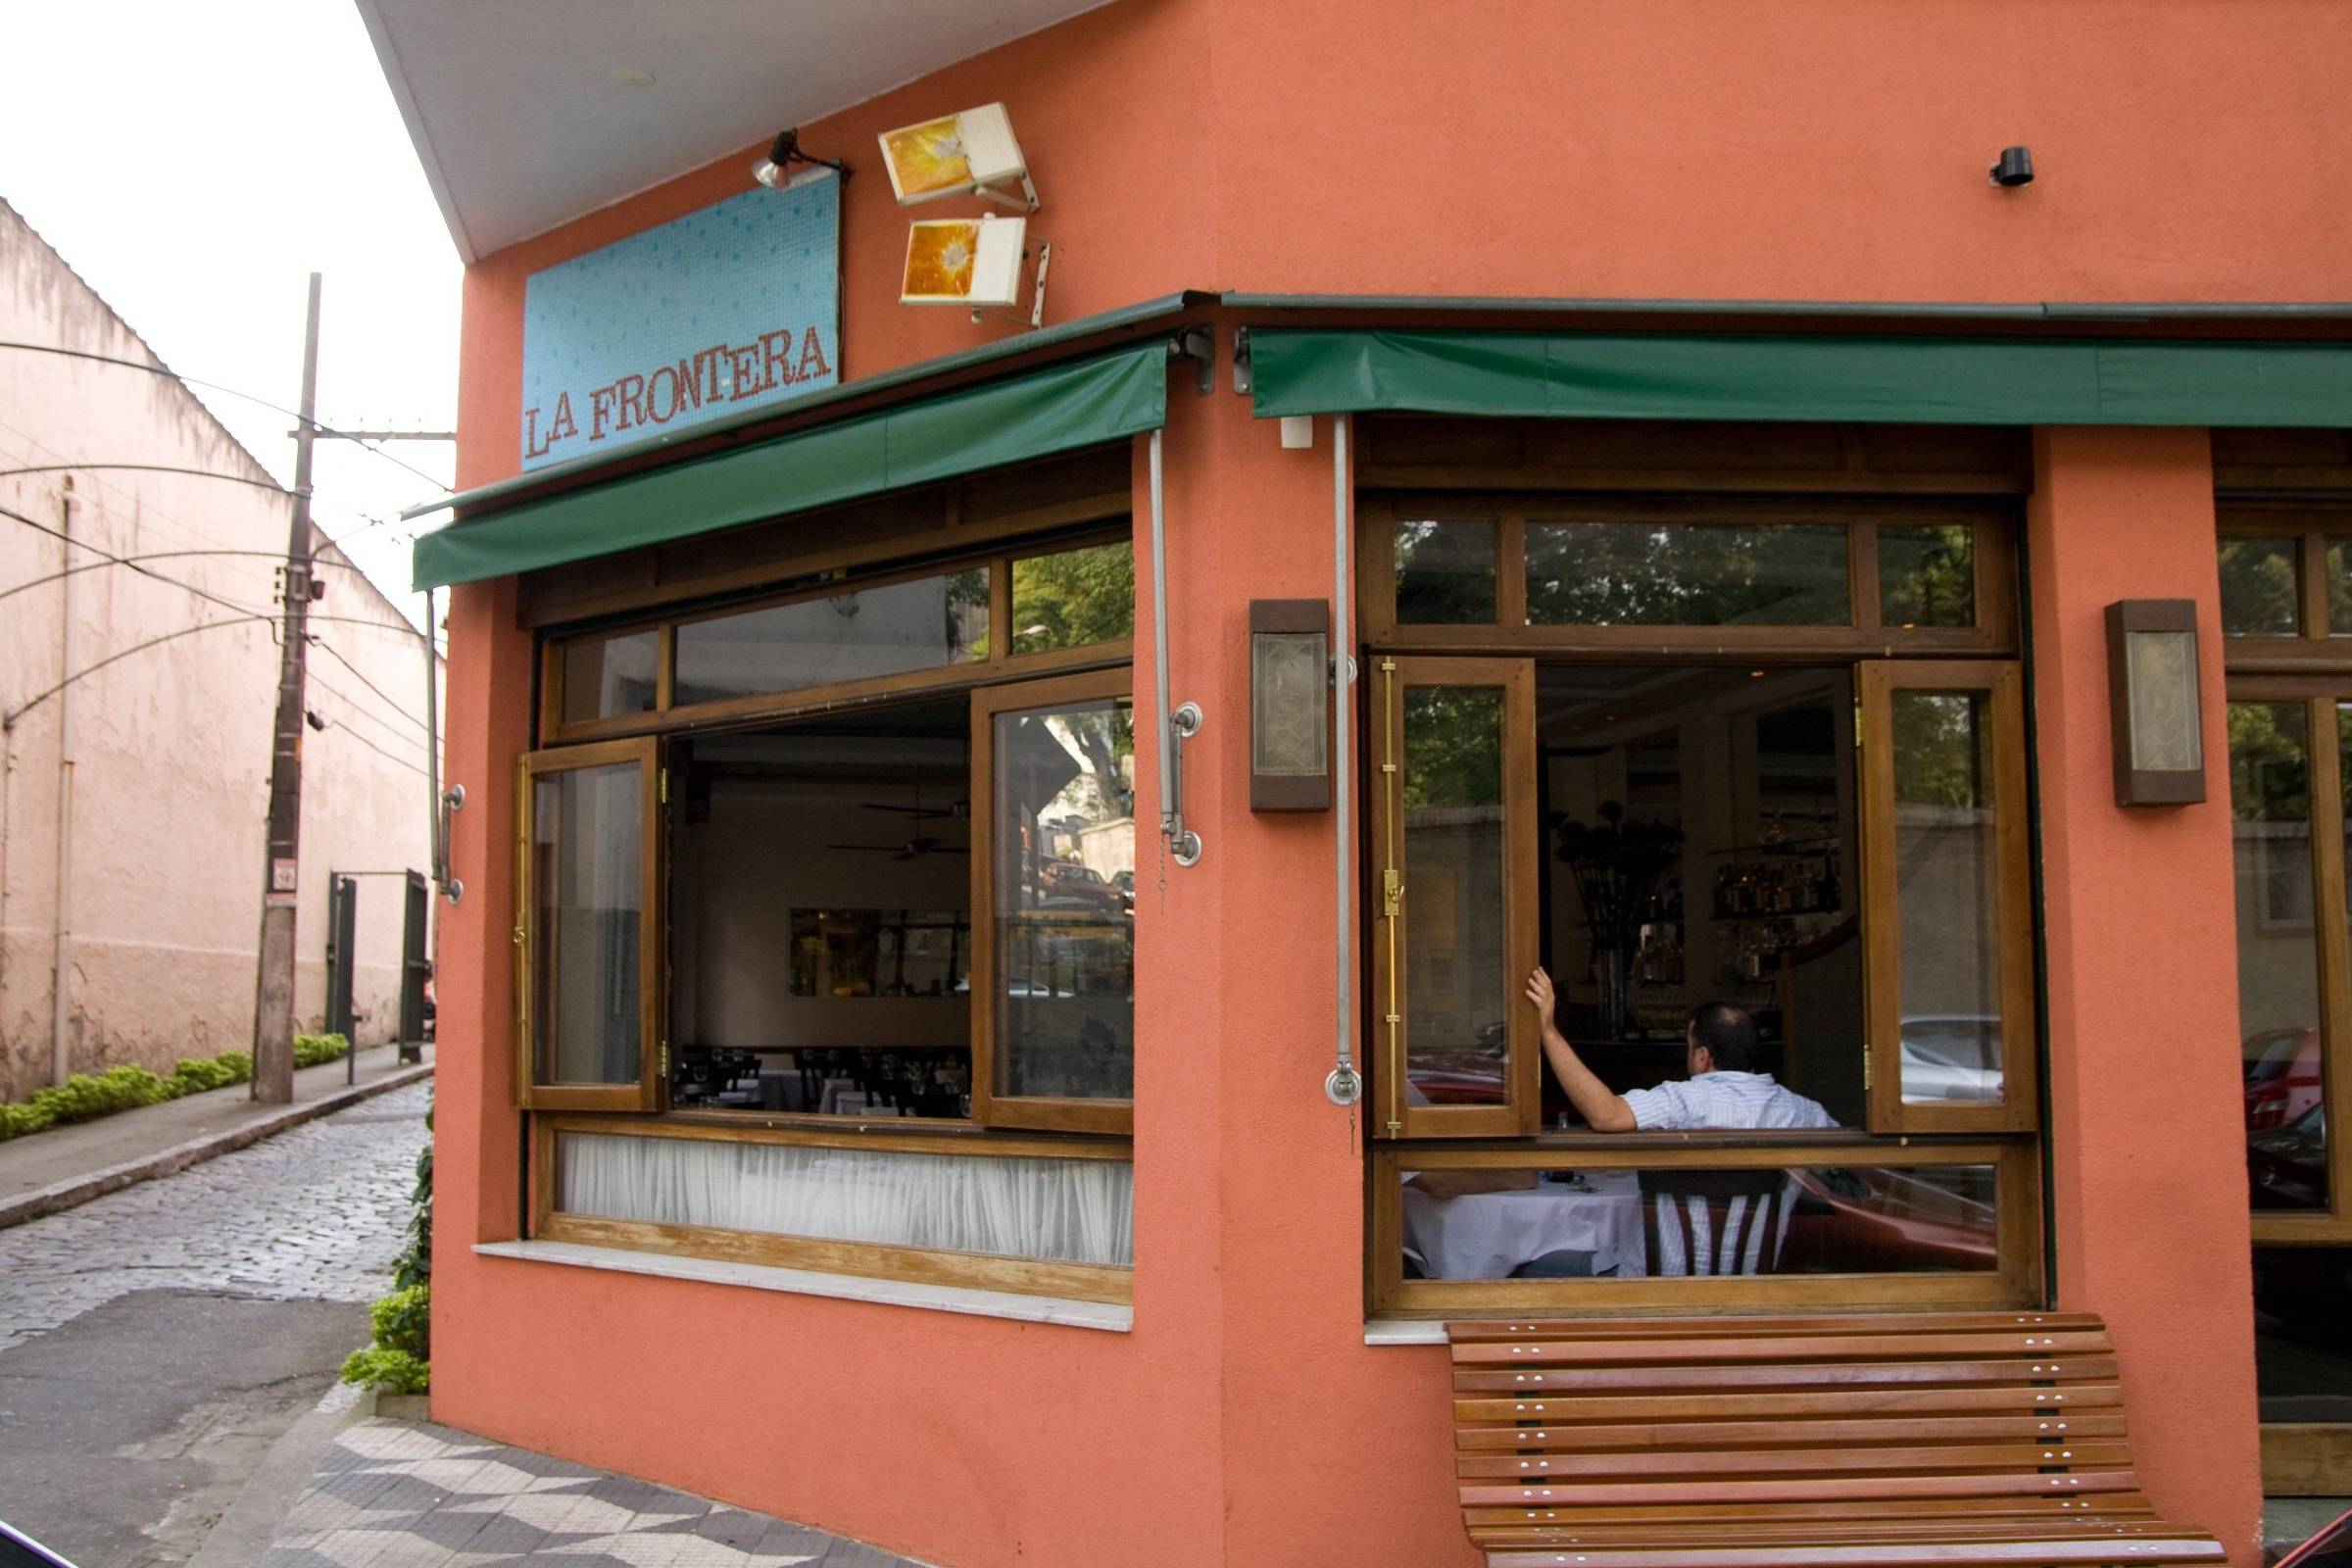 Com restrições, restaurantes brasileiros nos EUA sofrem para manter portas  abertas - AcheiUSA